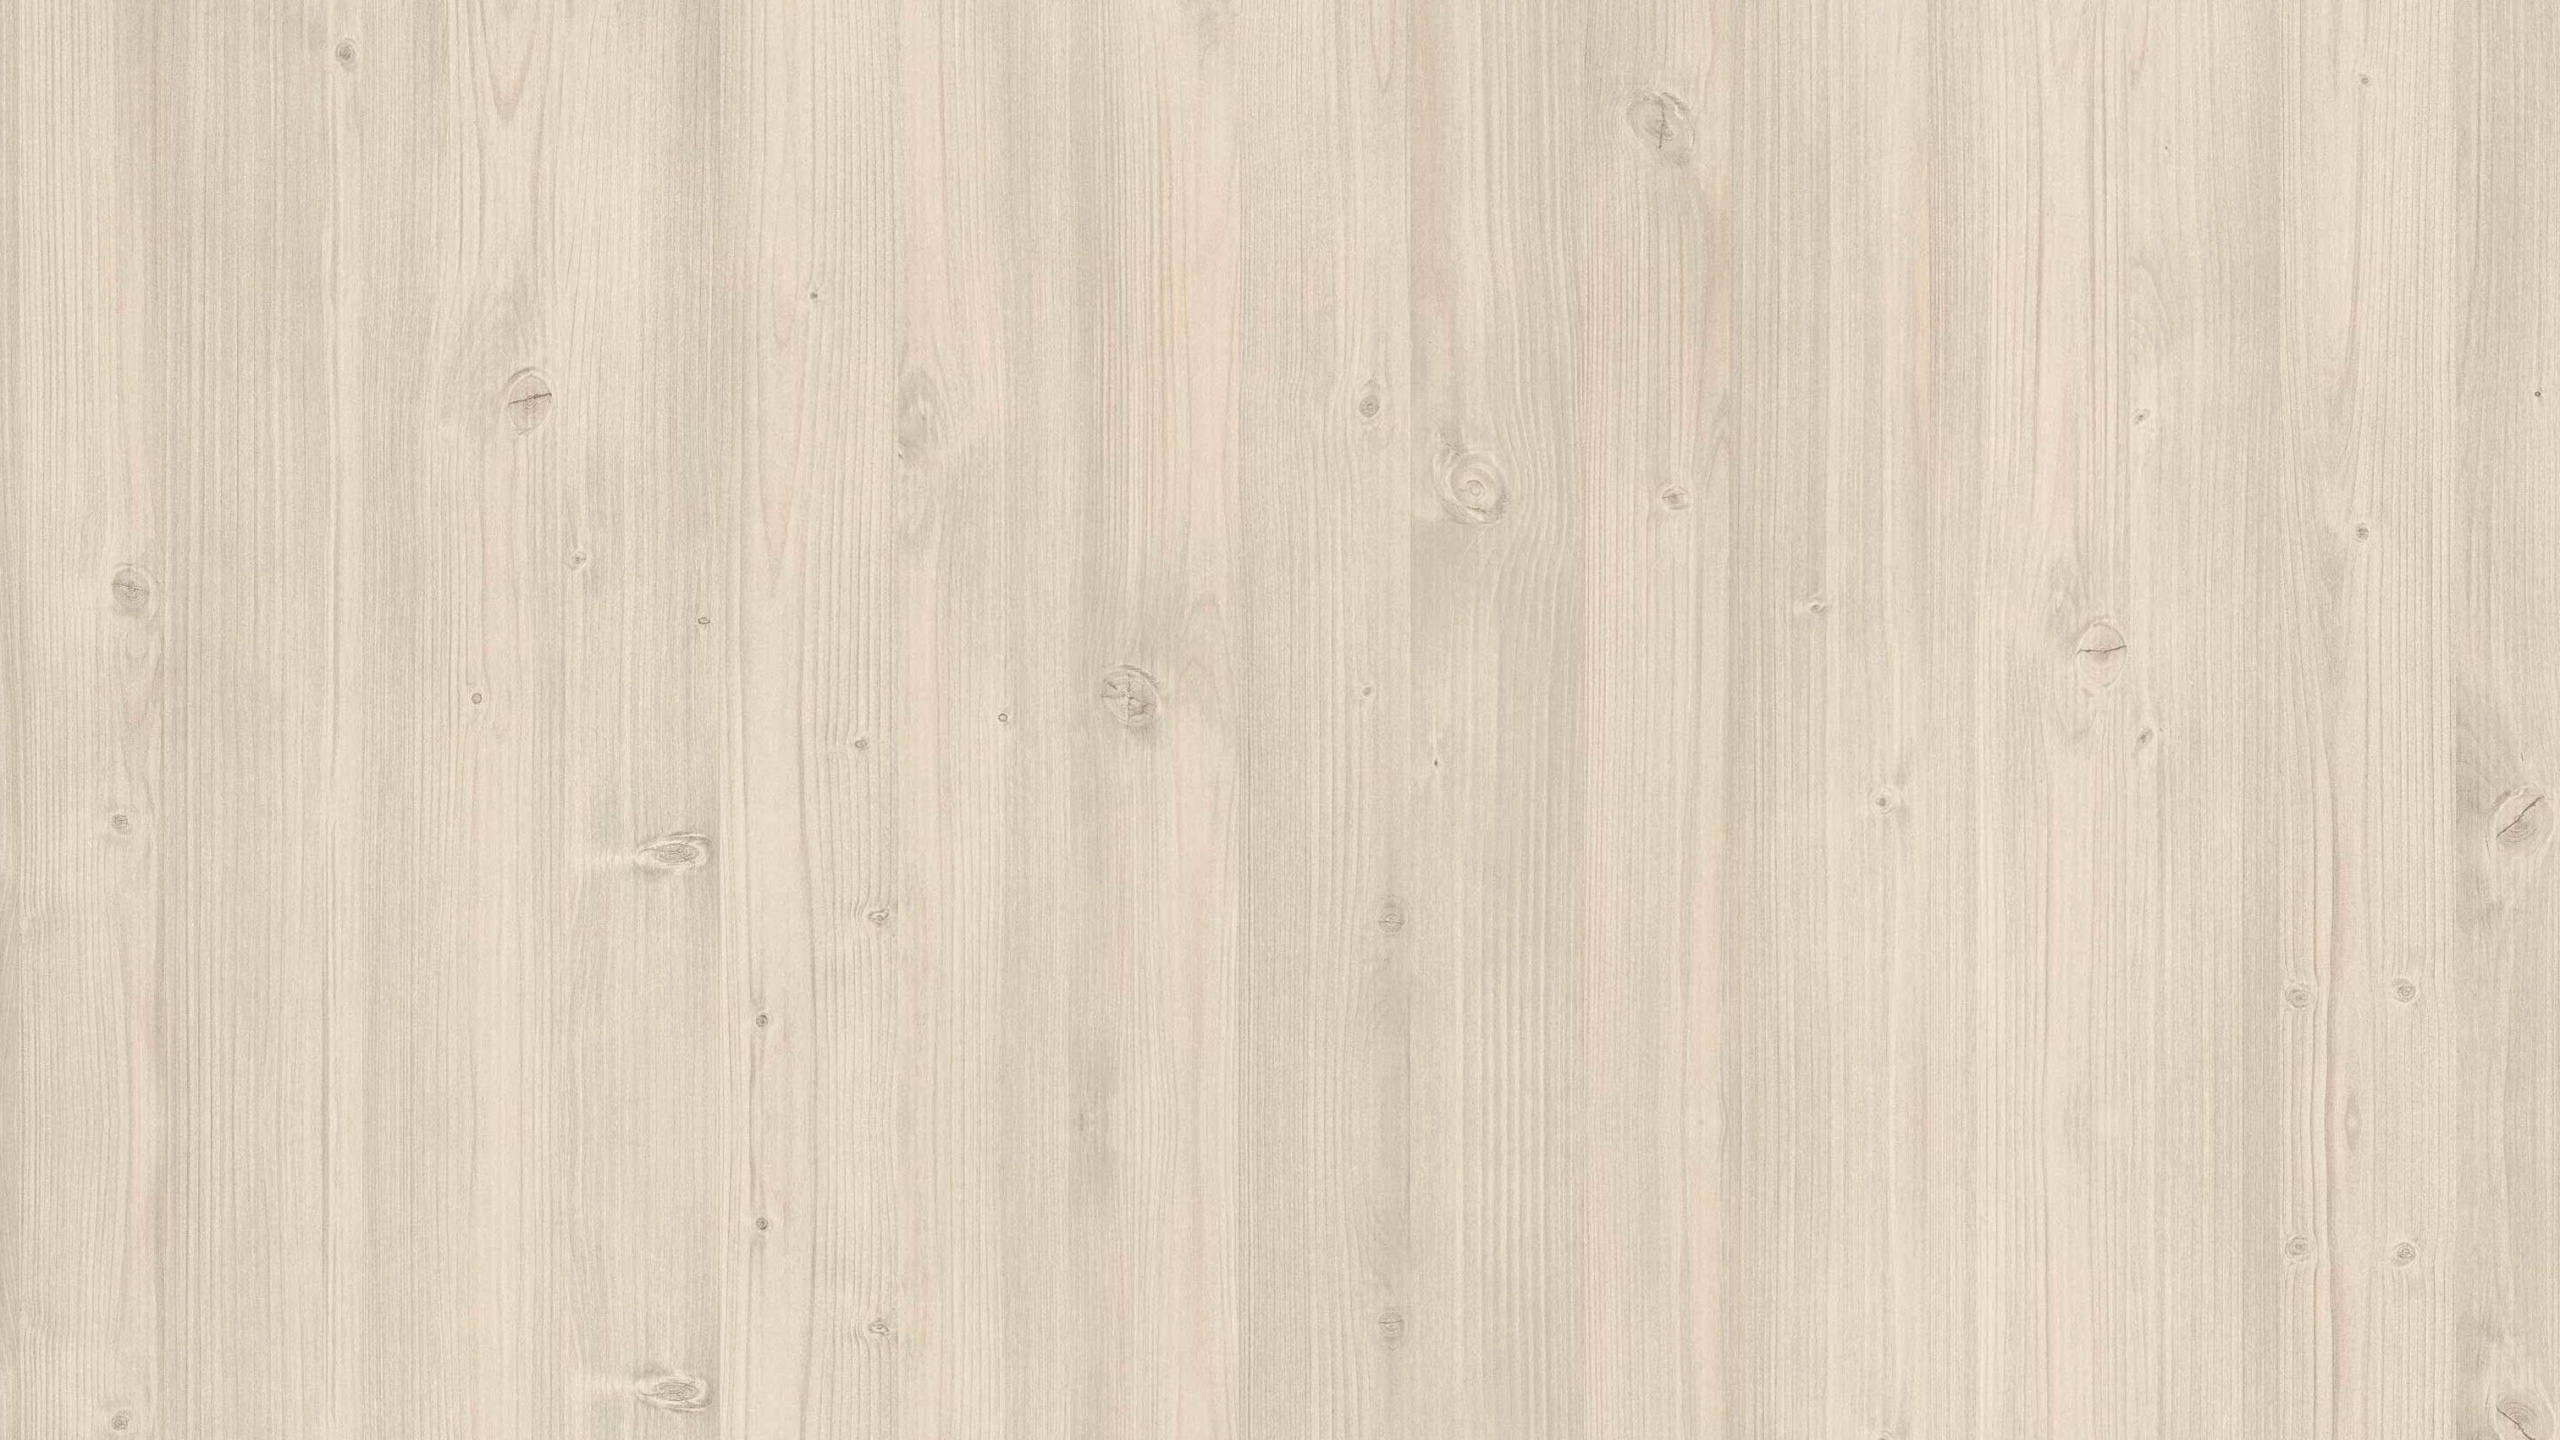 木地板, 纹理, 硬木, 木, 木染色 壁纸 2560x1440 允许